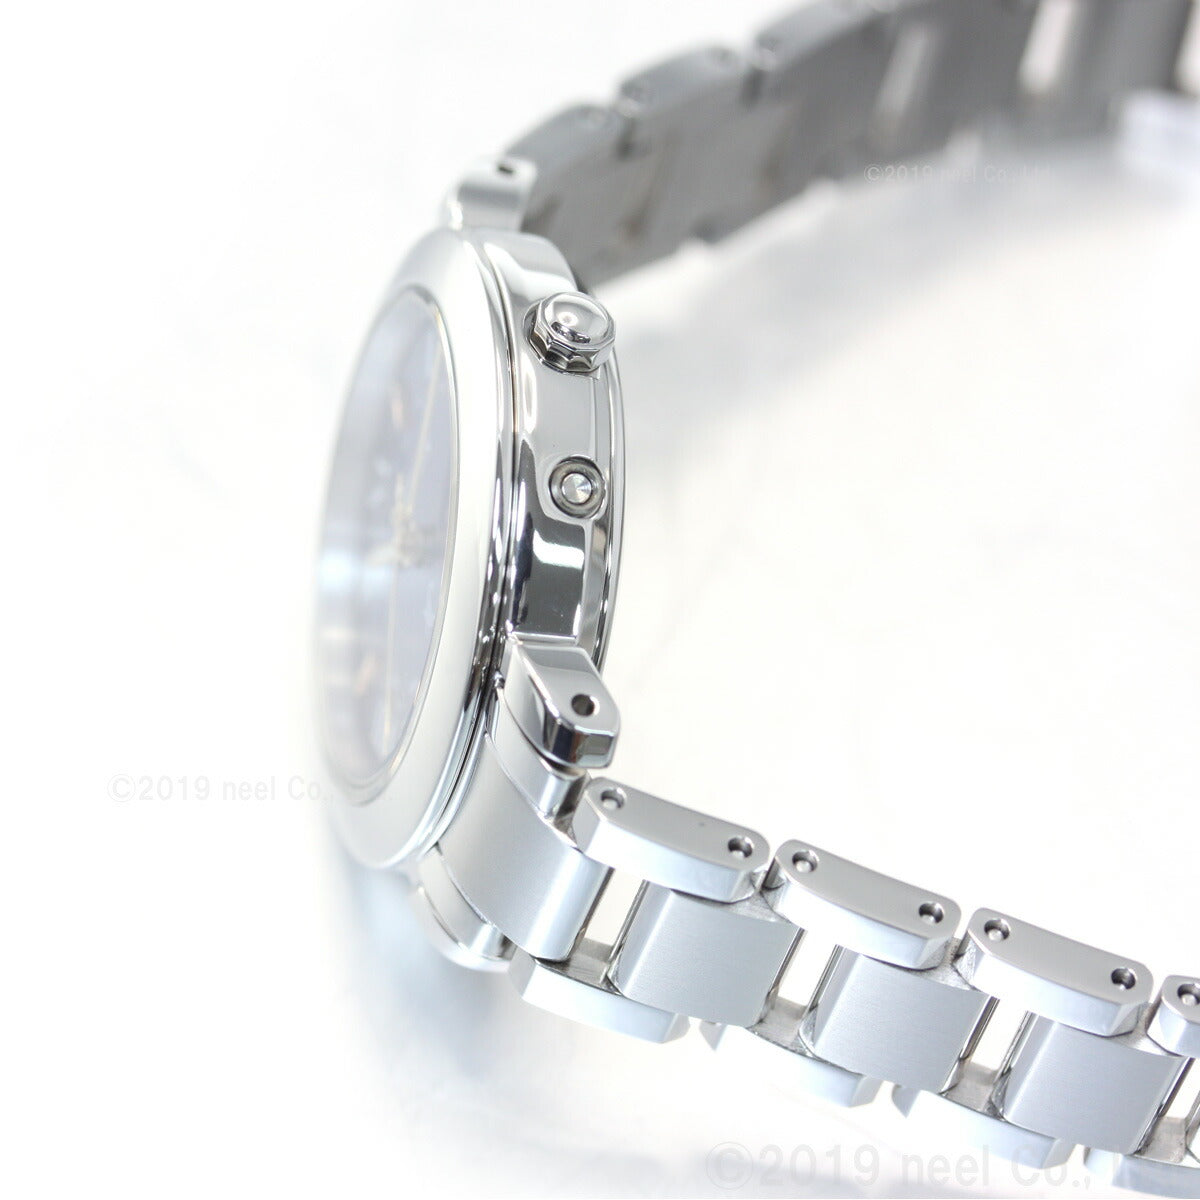 シチズン クロスシー CITIZEN xC エコドライブ 電波時計 ティタニア ハッピーフライト hikari collection 腕時計 レディース ES9440-51L